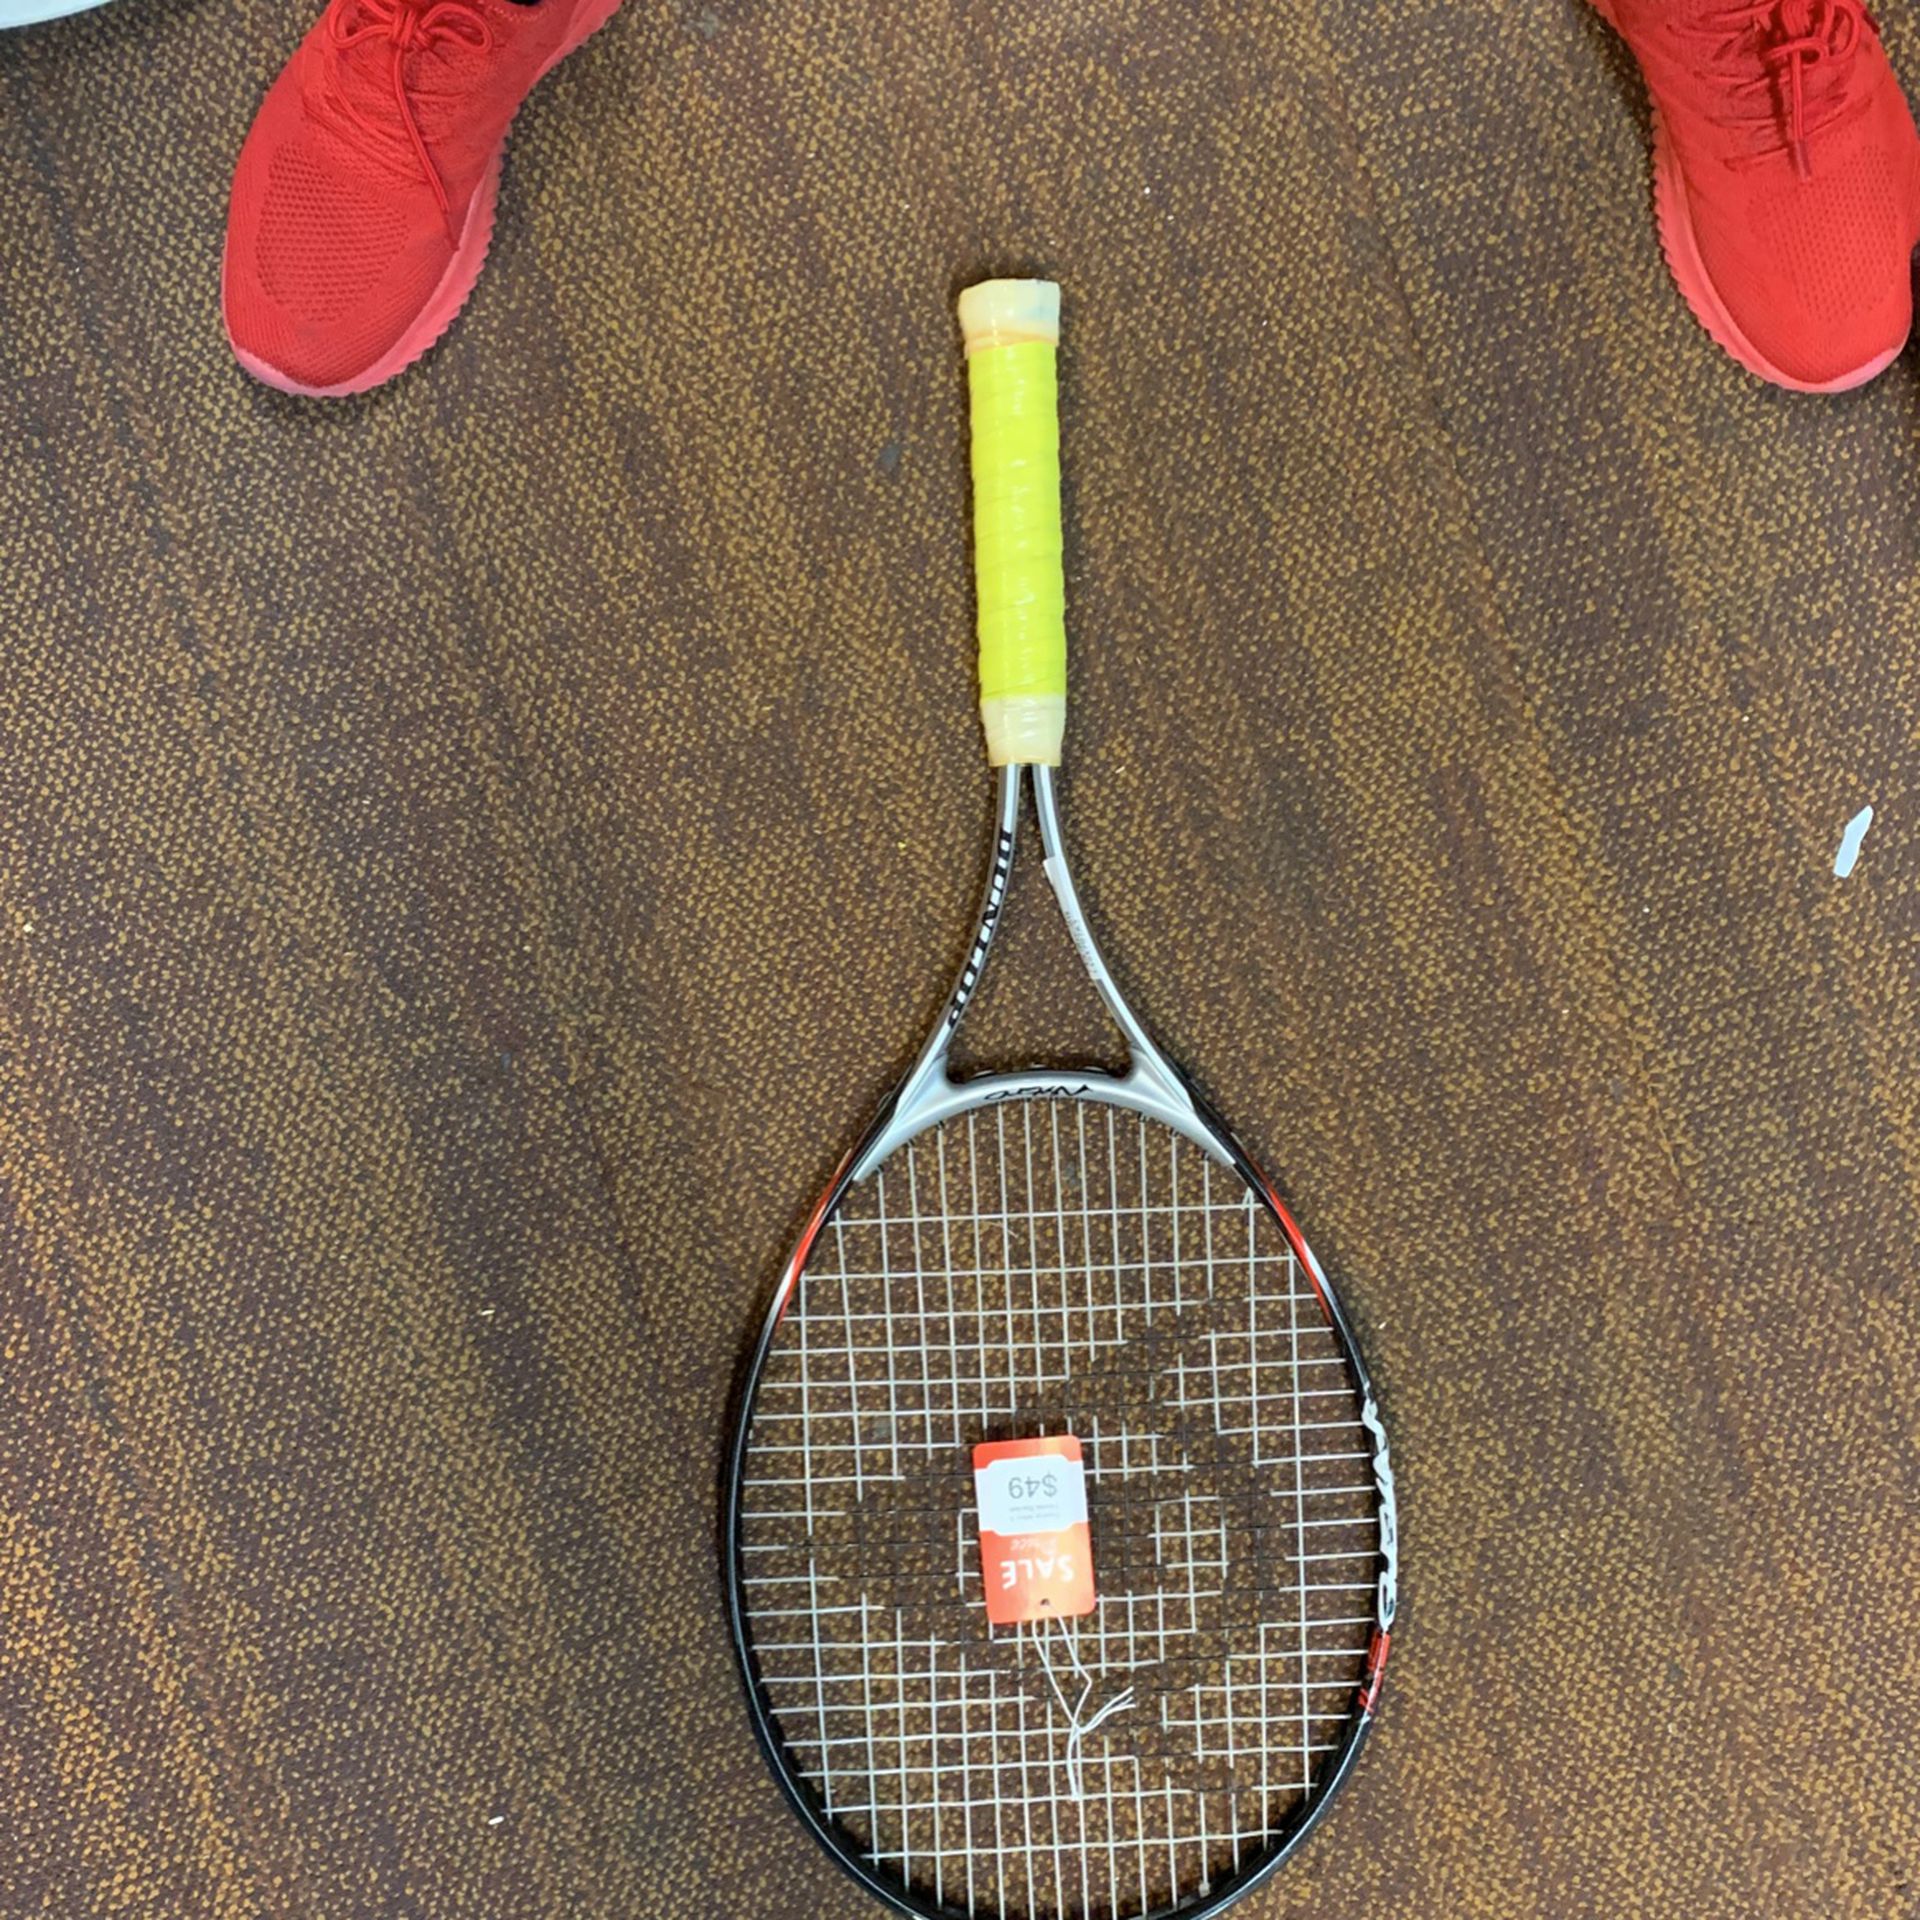 Dunlap Nitro 3 Tennis Racket 